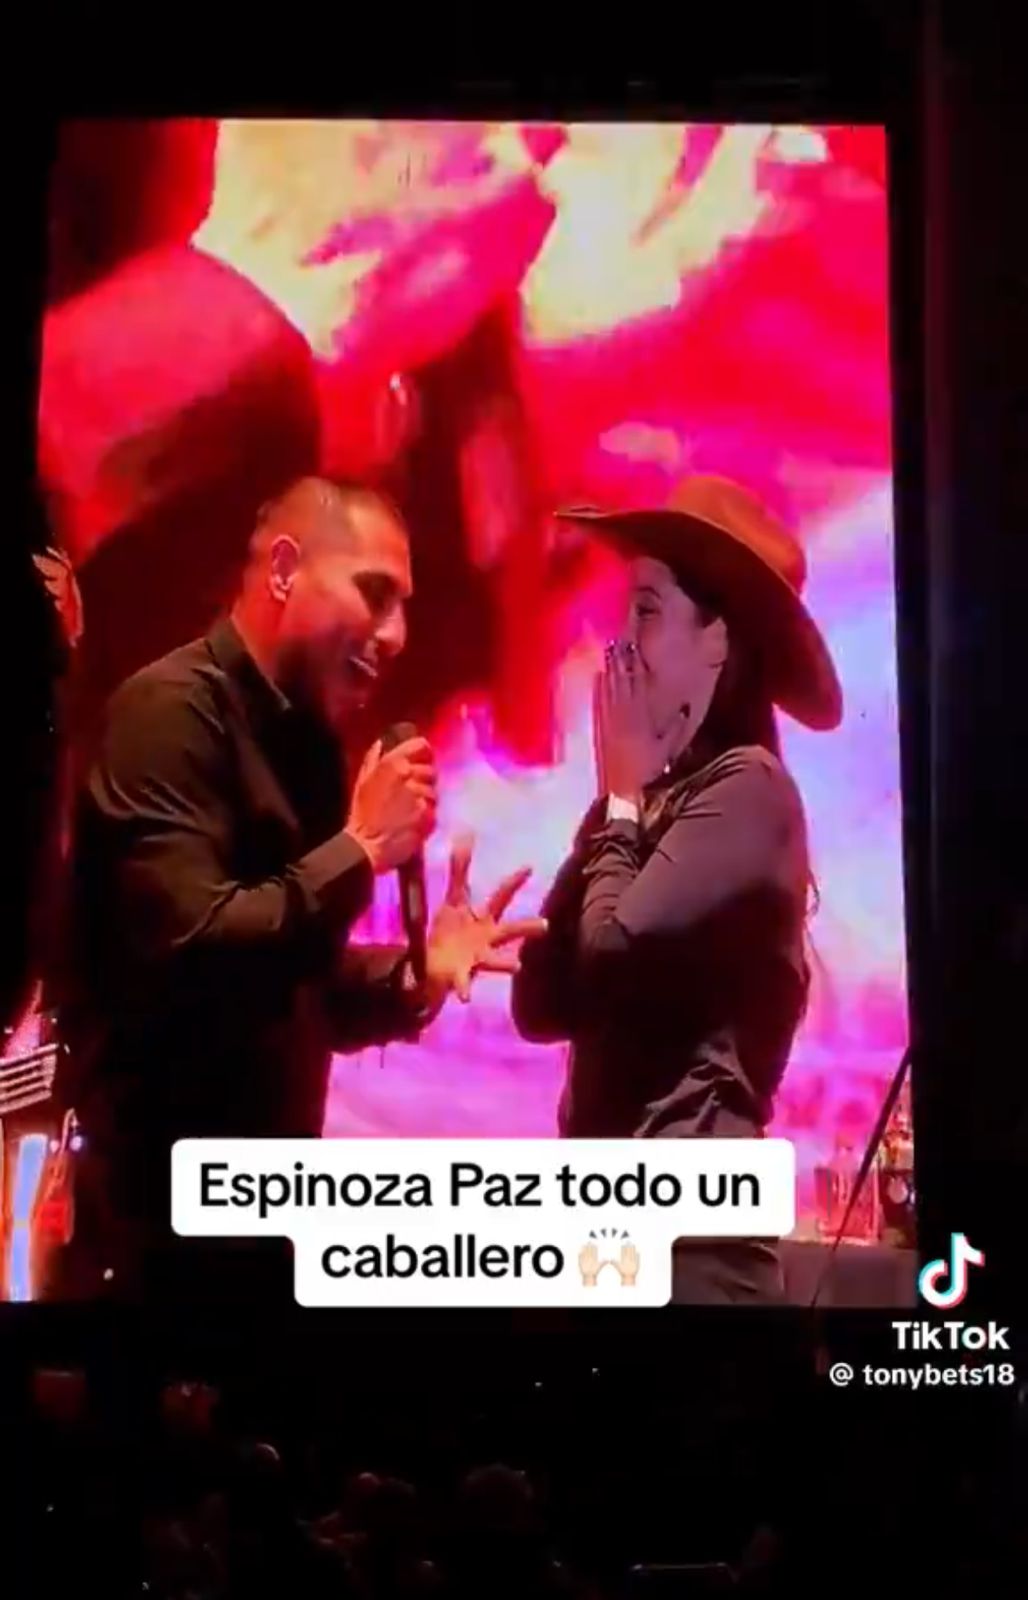 Espinoza Paz rechaza beso de fan